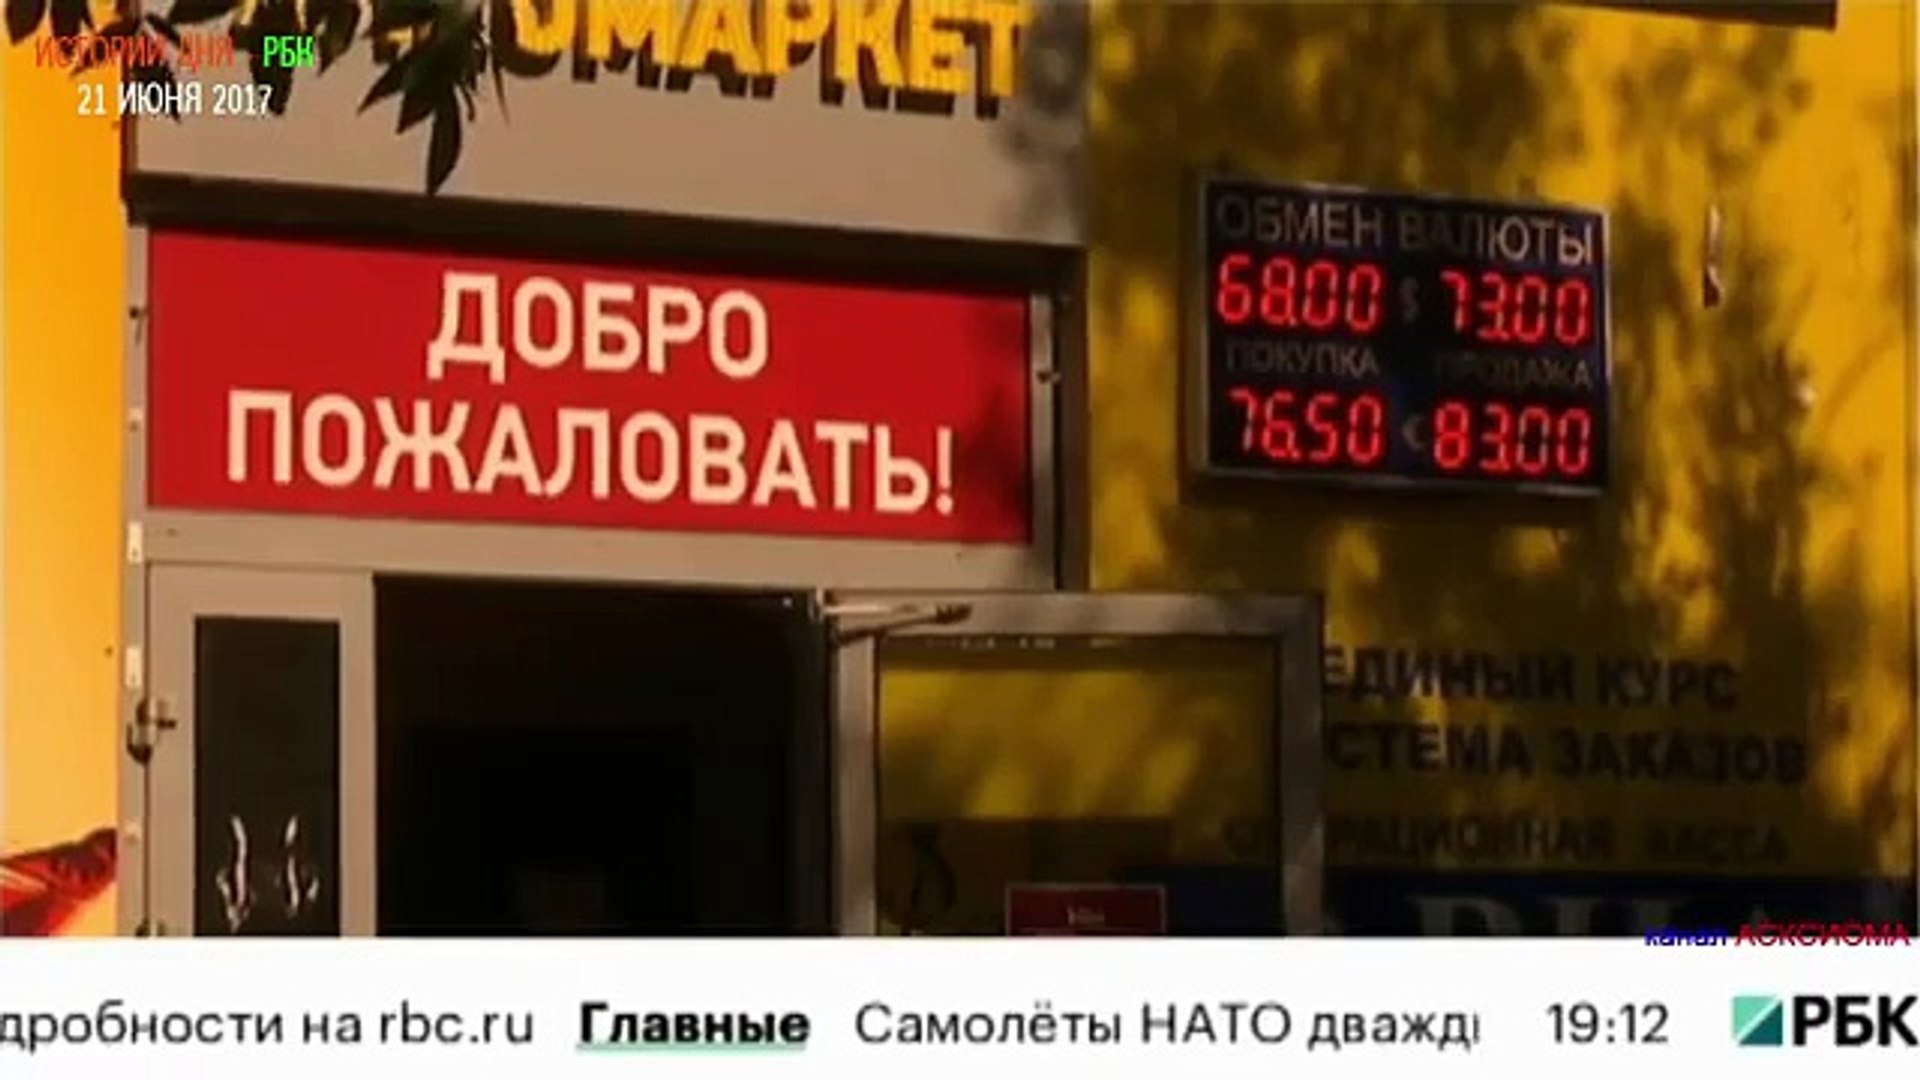 ⁣Курсы валют нервируют - Падение рубля. Что делать, куда бежать? [21/06/2017]